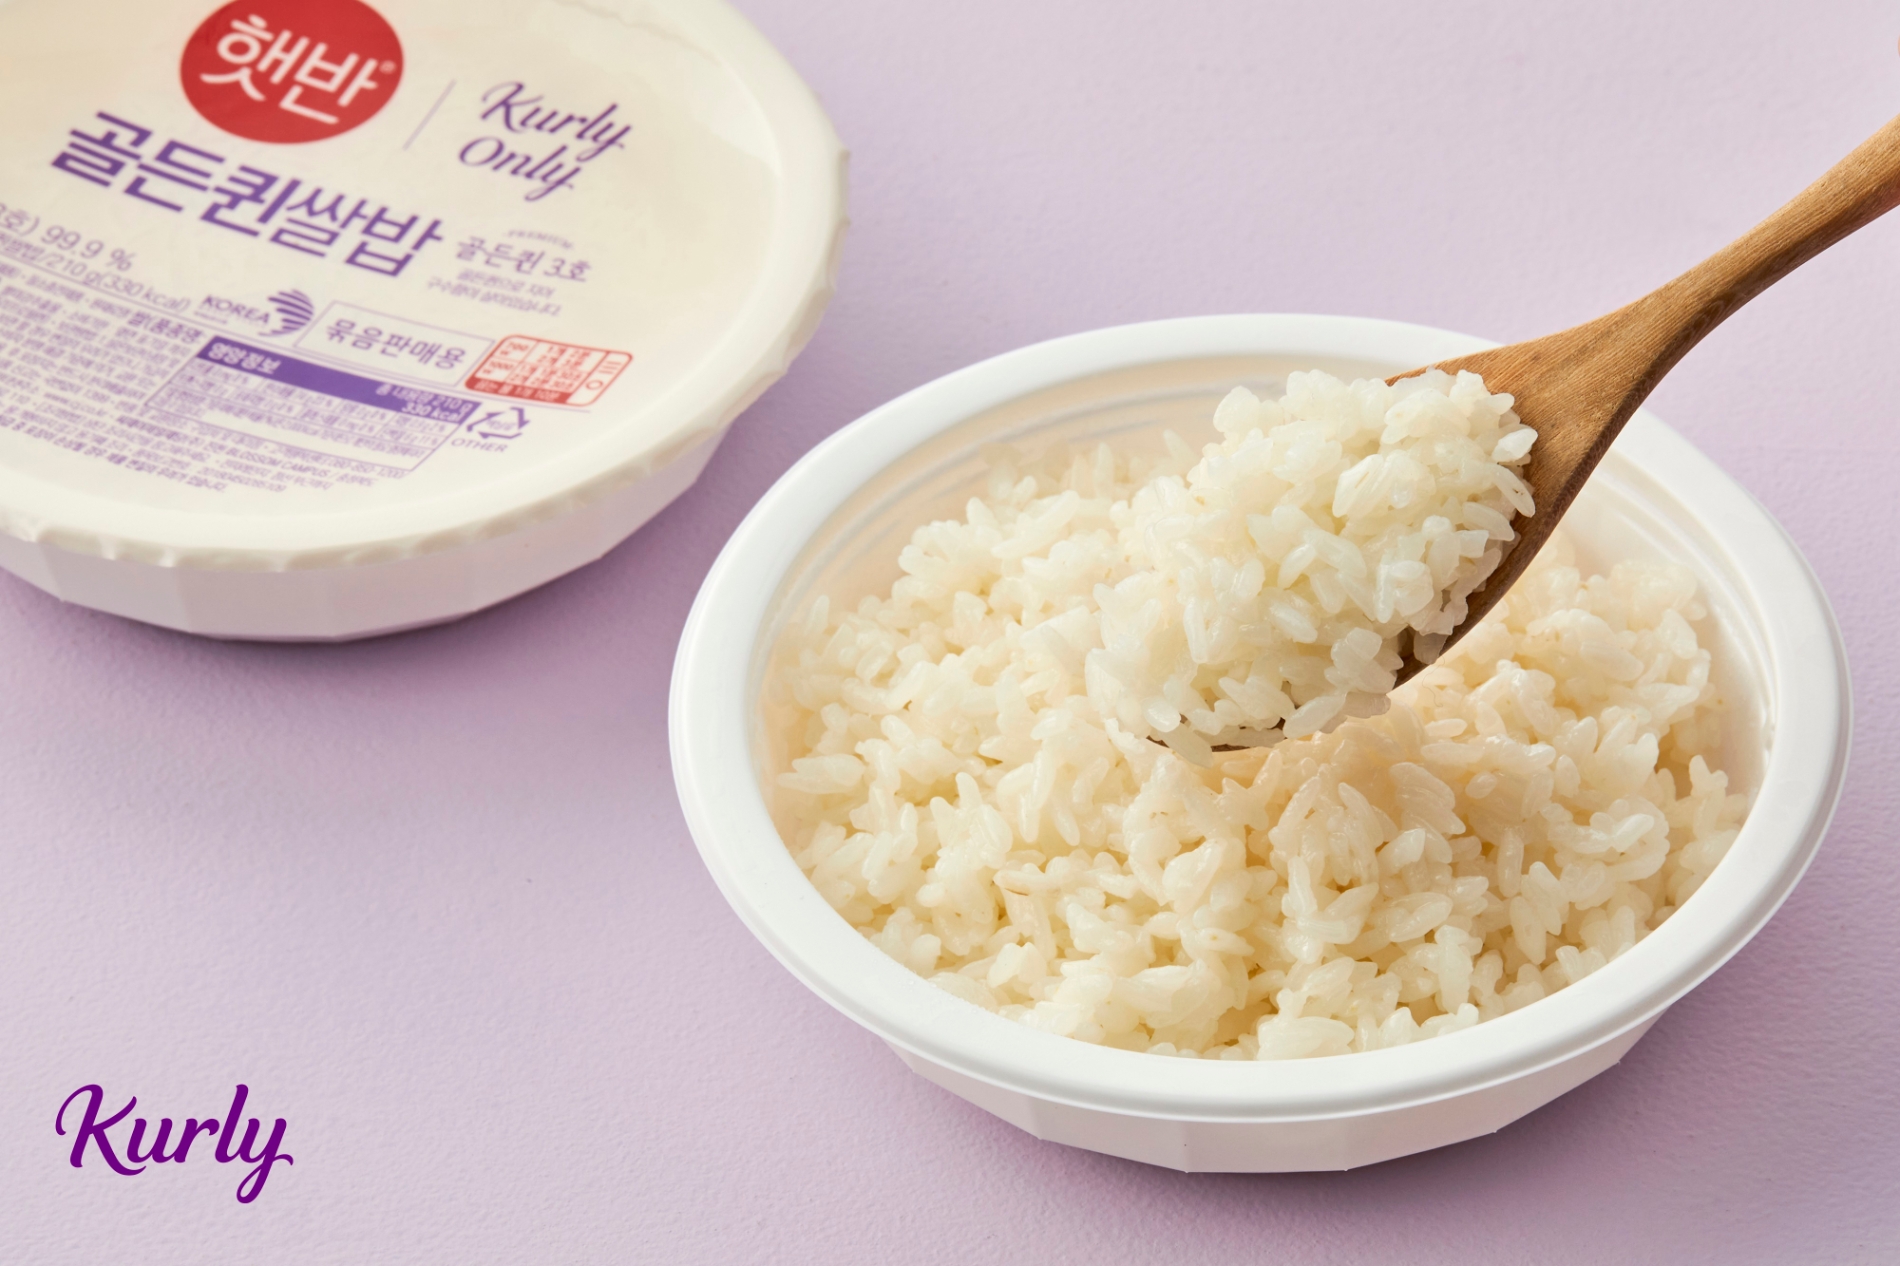 컬리와 CJ제일제당이 손잡고 만든 골든퀸쌀밥 초도 물량이 완판됐다. /사진제공=컬리 